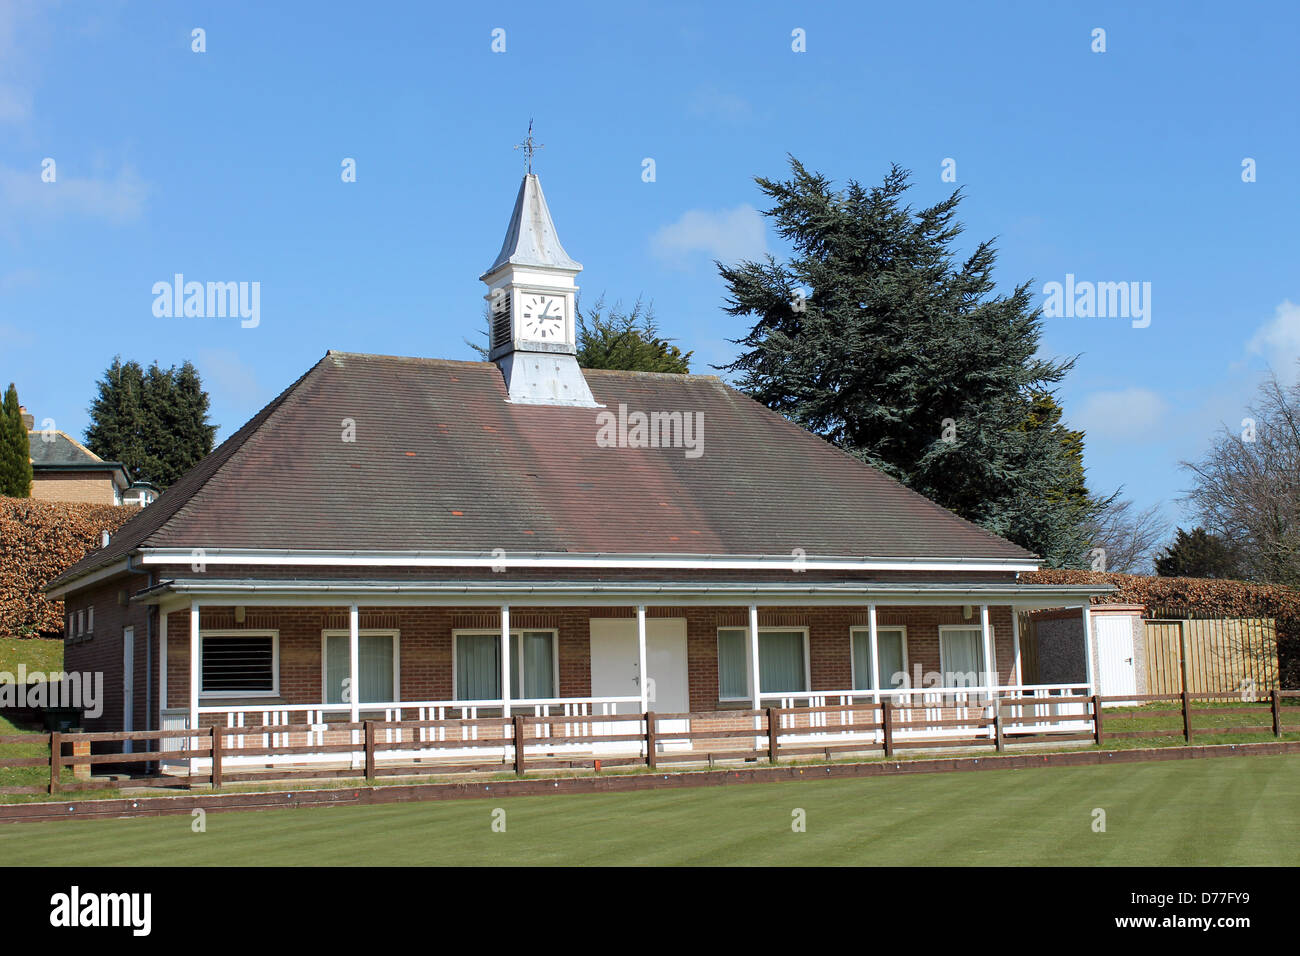 Bowling Green pavilion avec fond de ciel bleu, Scarborough, Angleterre. Banque D'Images